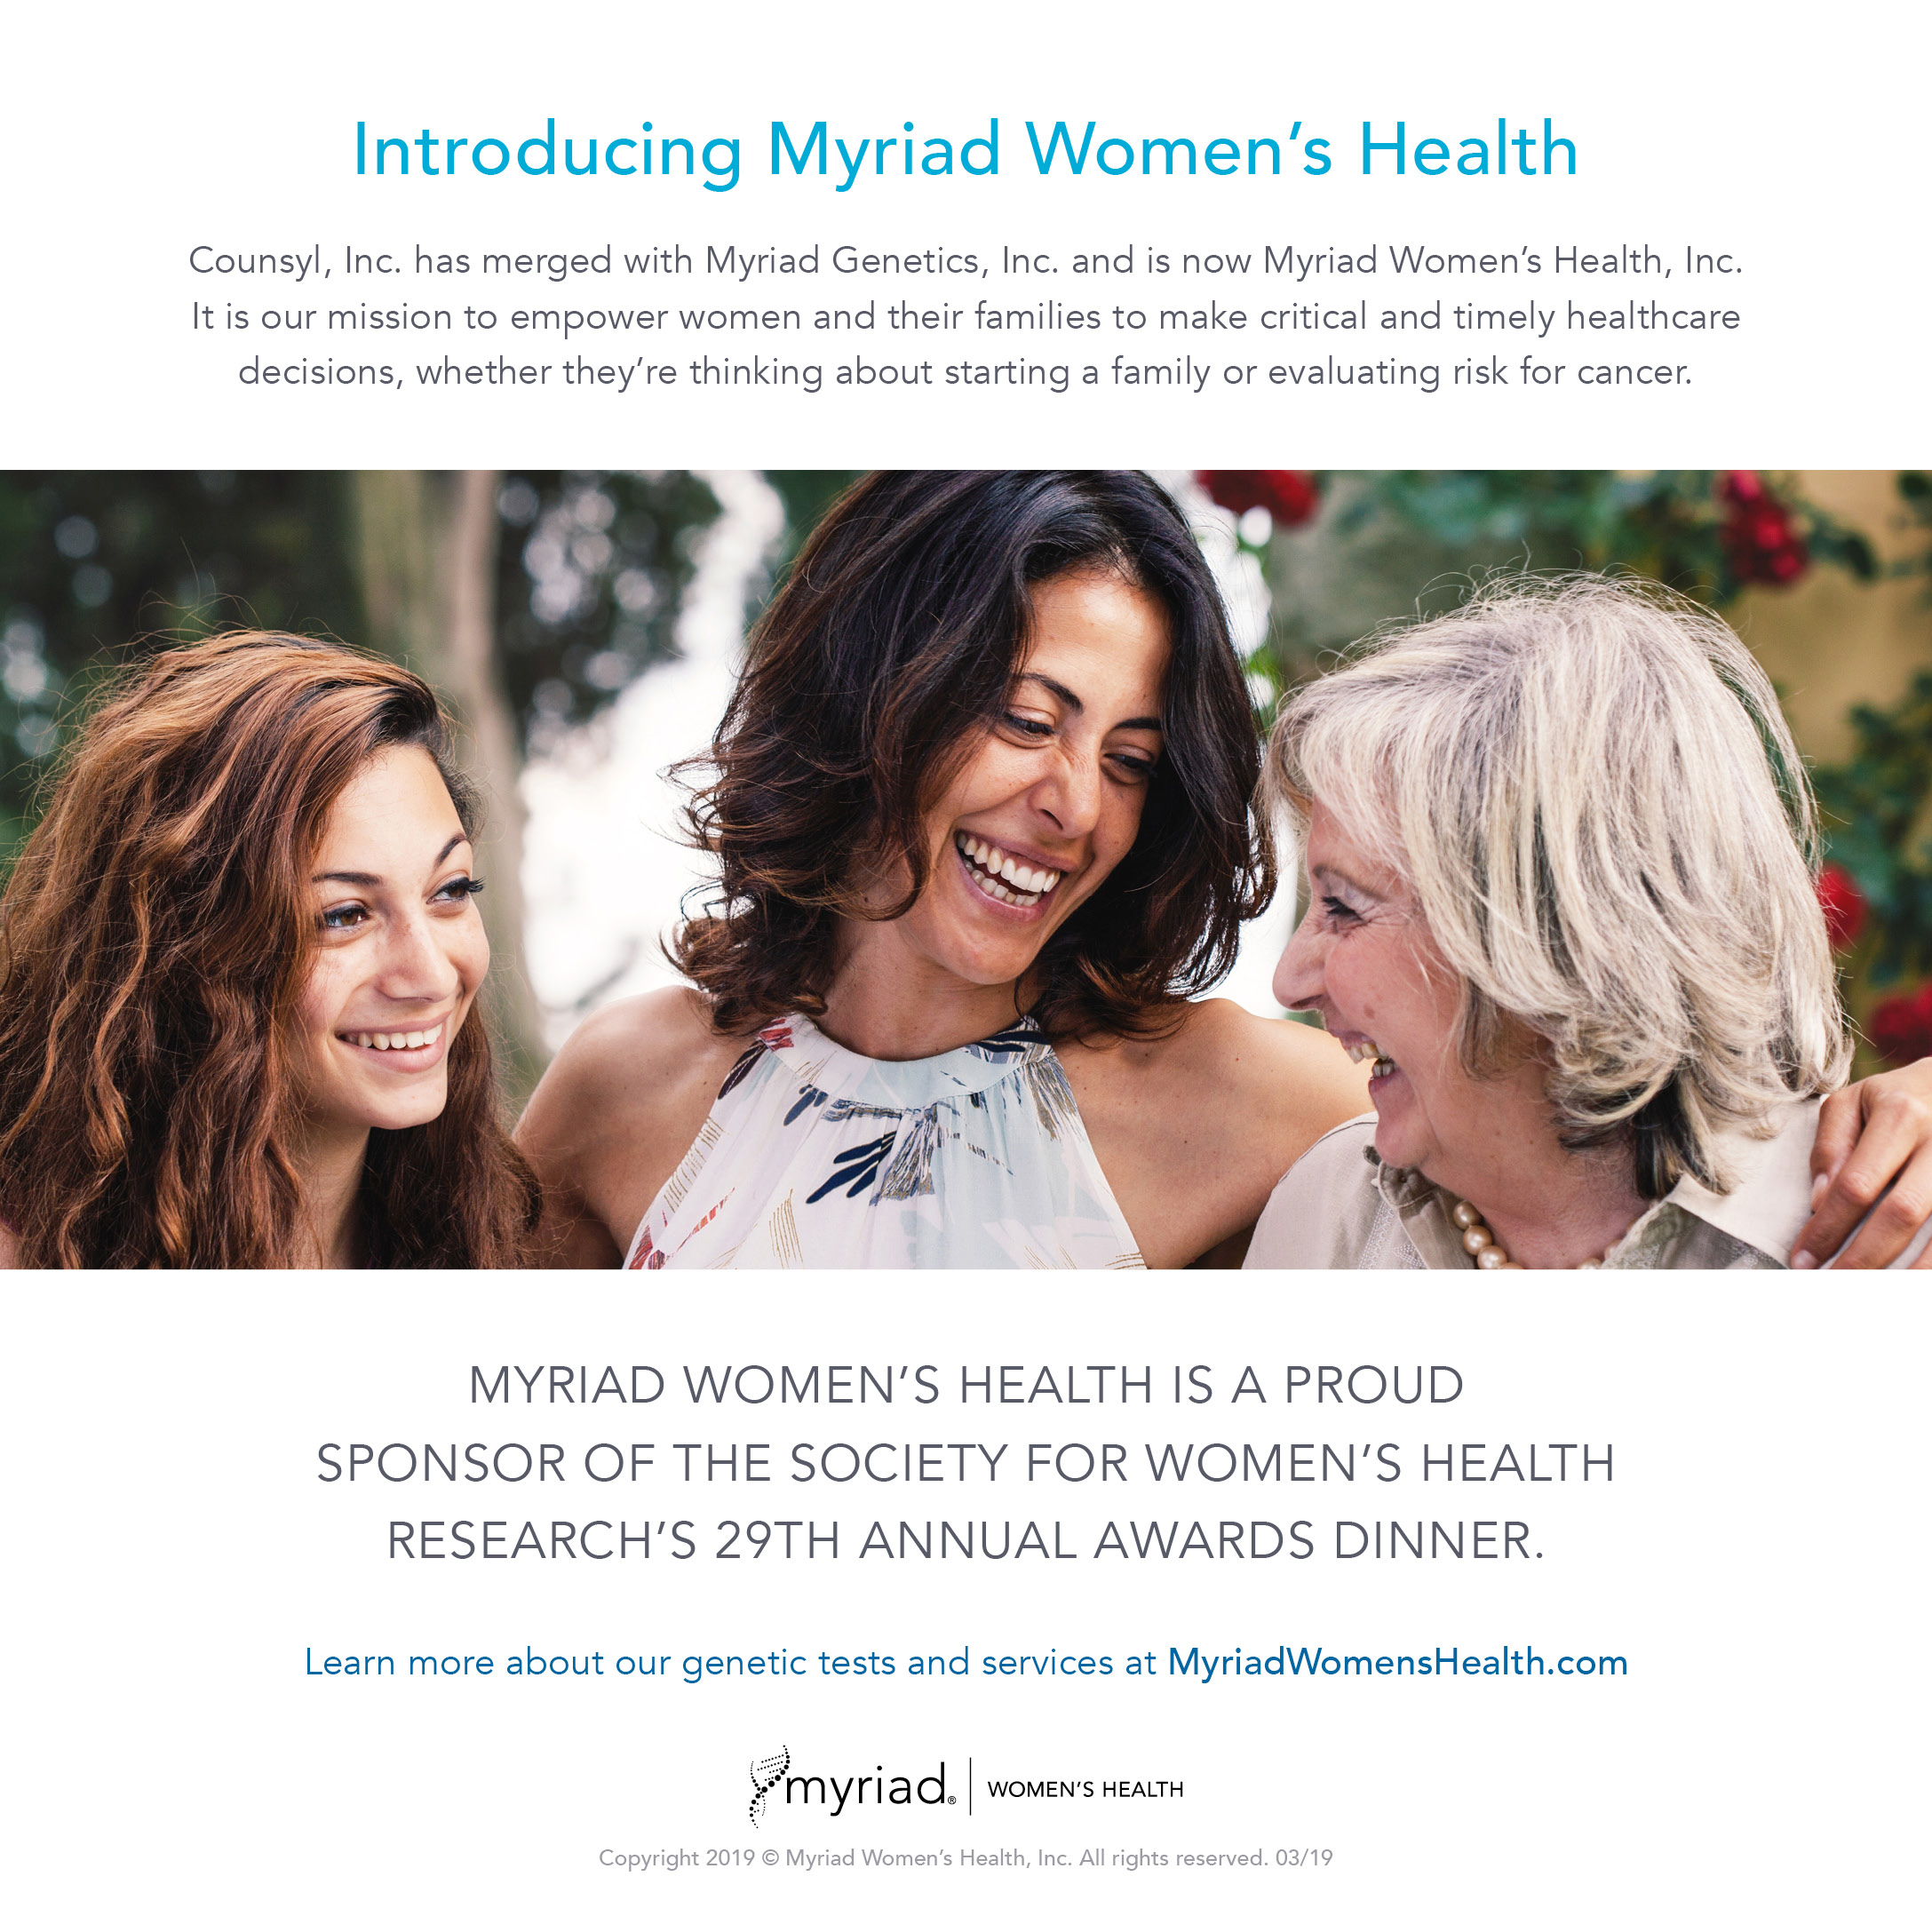 Myriad Women's Health